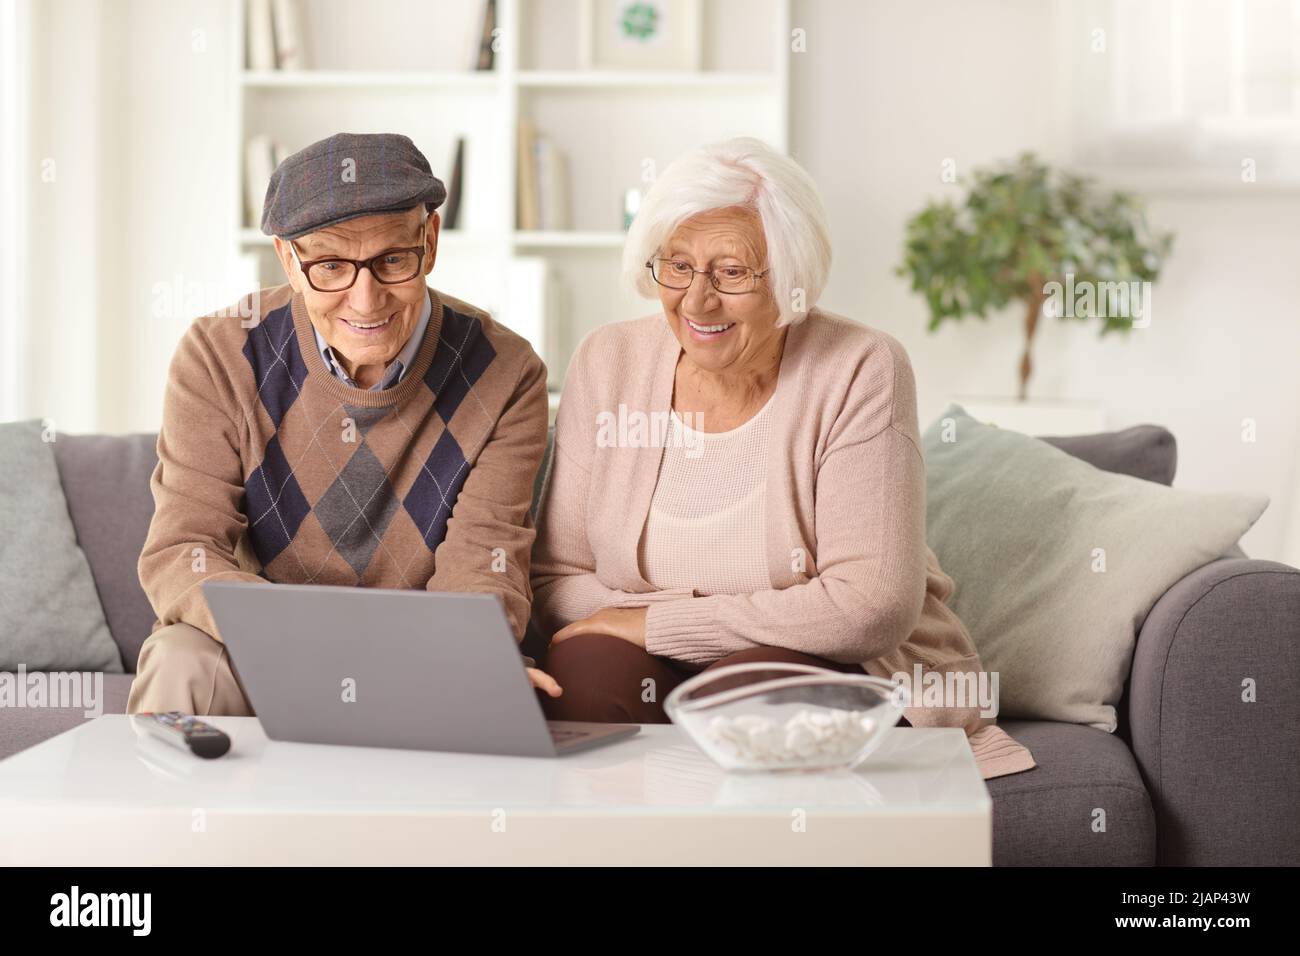 Ein älteres Paar, das zu Hause auf einem Sofa sitzt und einen Laptop anschaut Stockfoto